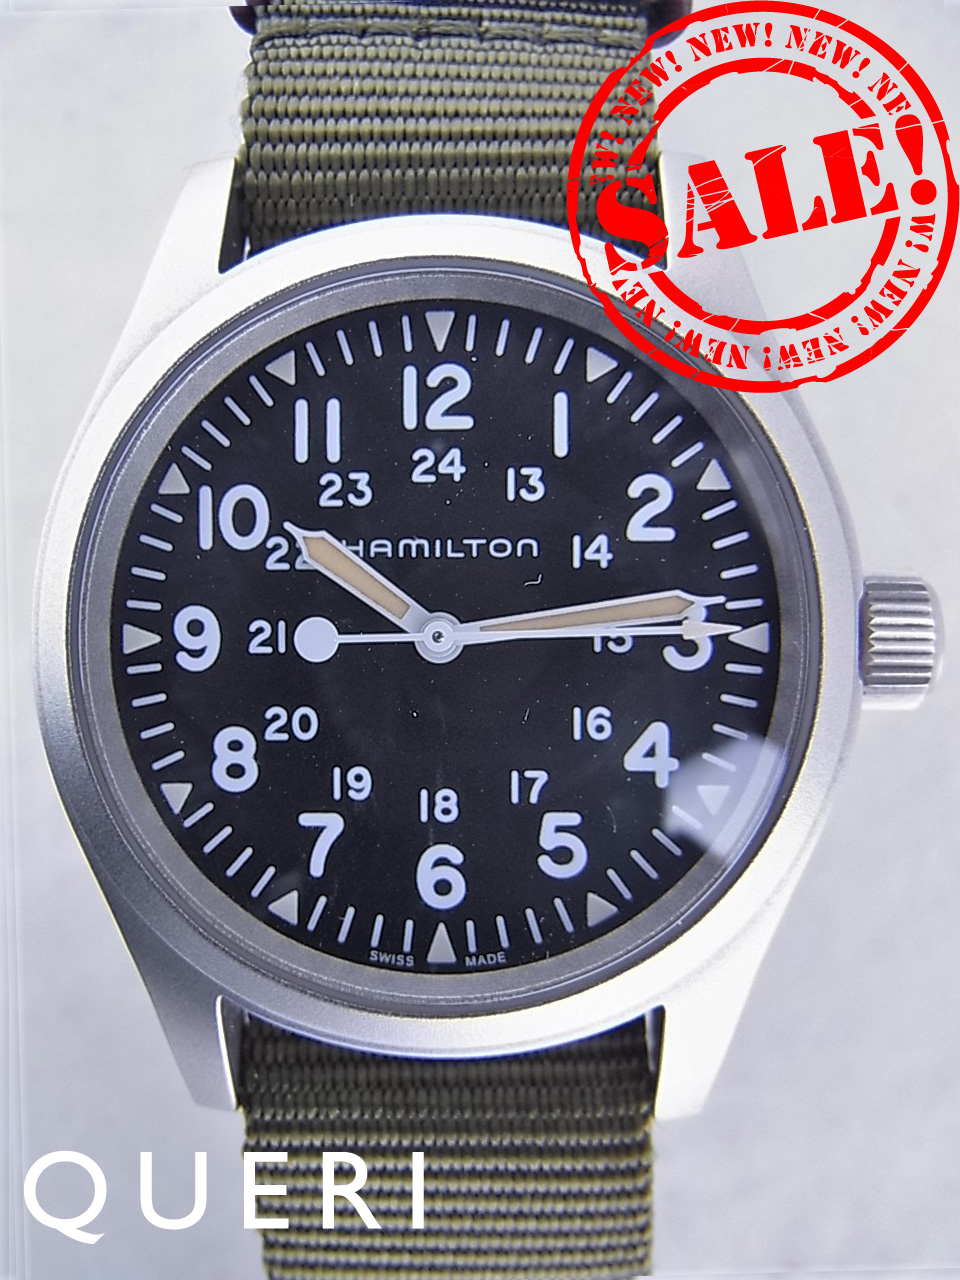 ハミルトン(hamilton)時計通販・販売|新品 中古－ブランド時計販売のクエリ